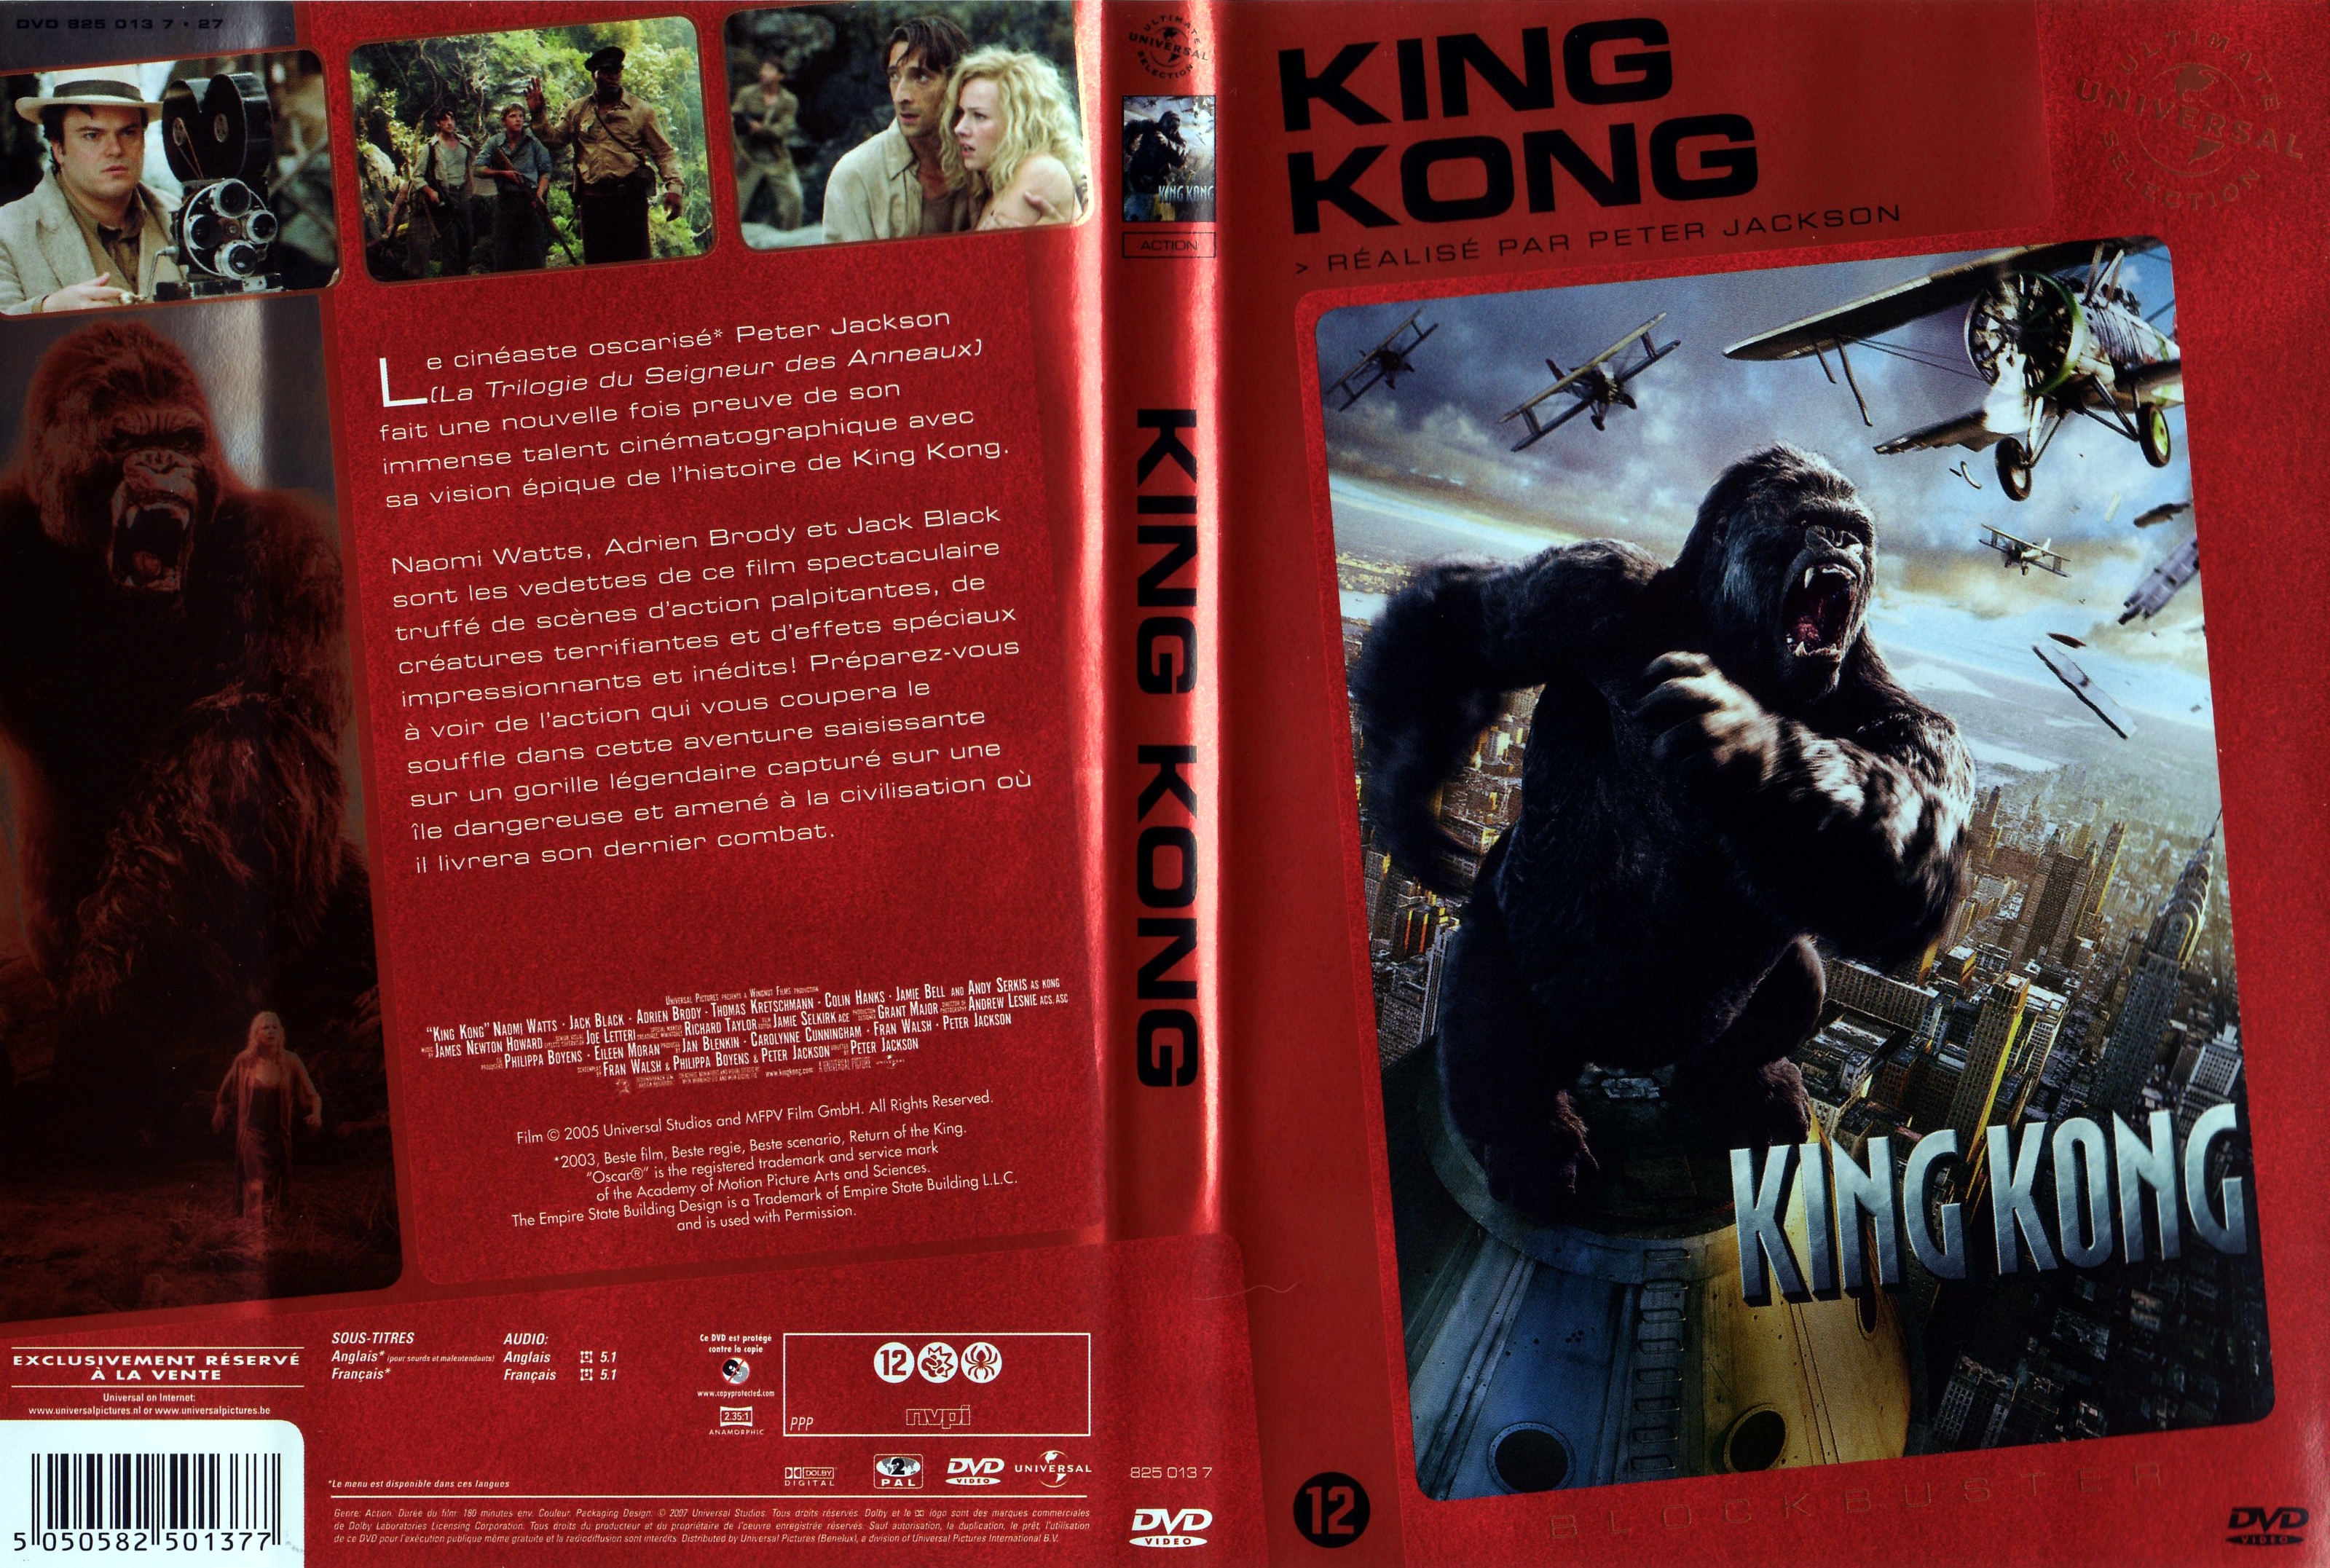 Jaquette DVD King kong 2005 v4